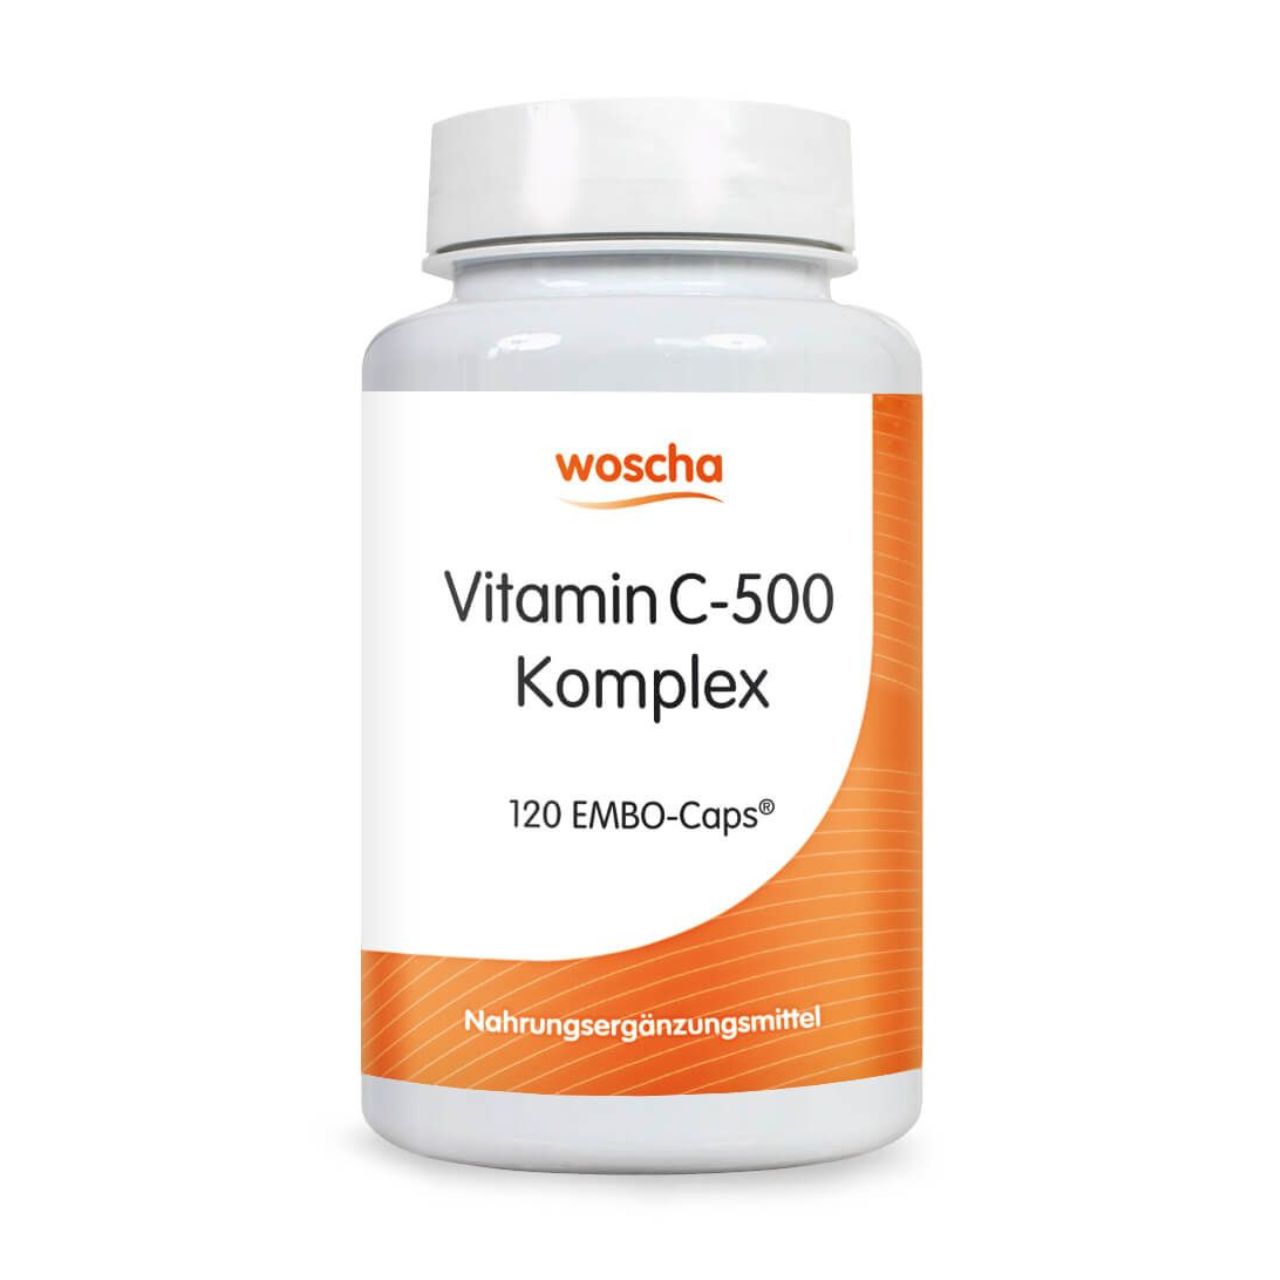 Woscha Vitamin C-500 Komplex von podo medi beinhaltet 120 Kapseln